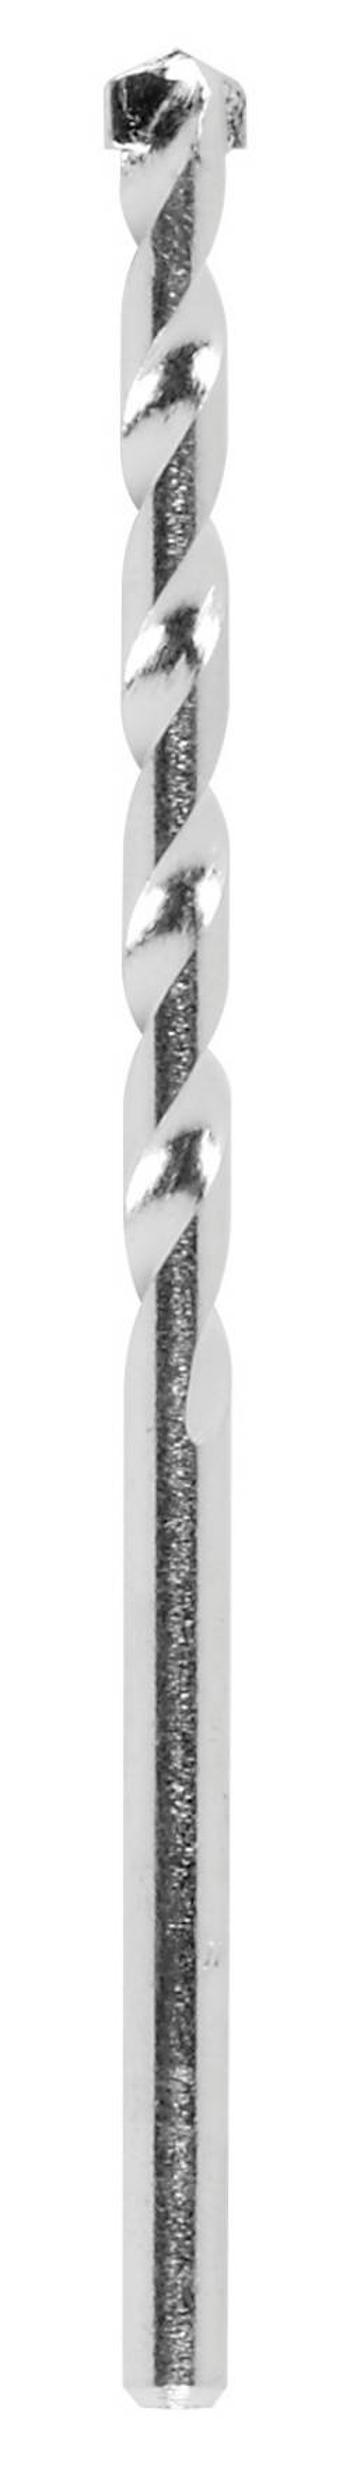 Spirálový vrták na kámen Bosch Accessories 2609255427 tvrdý kov válcová stopka, délka 200 mm, Ø 6 mm, 1 ks